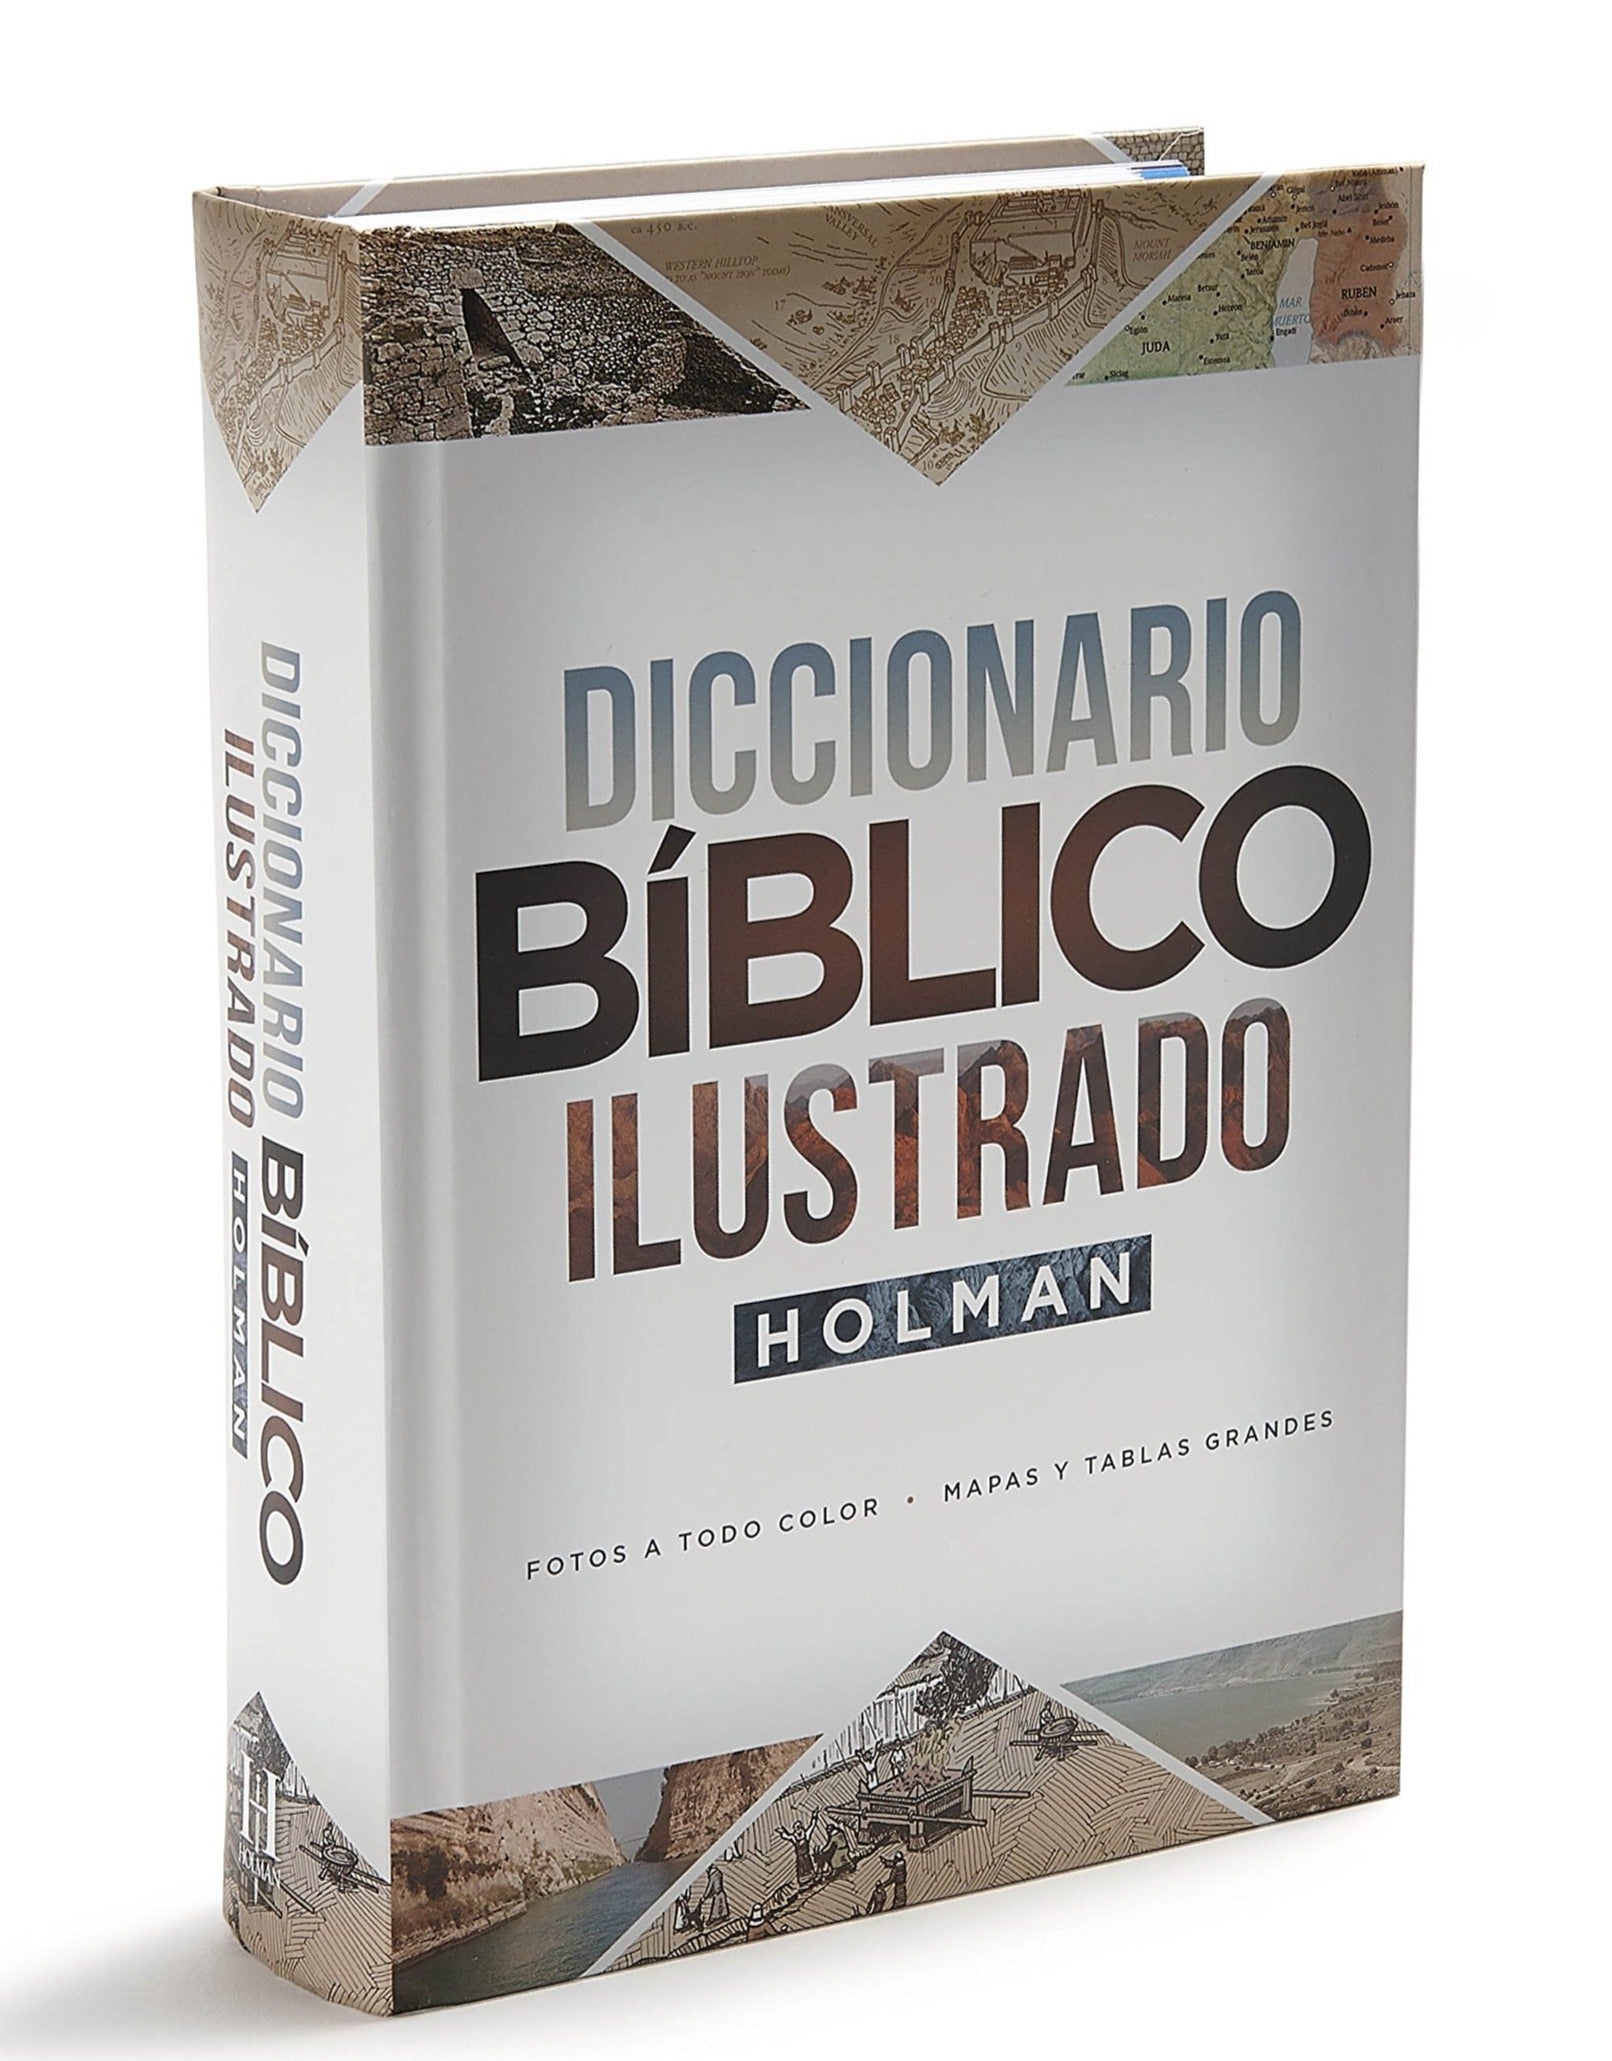 Diccionario Bíblico Ilustrado Holman Nueva edición